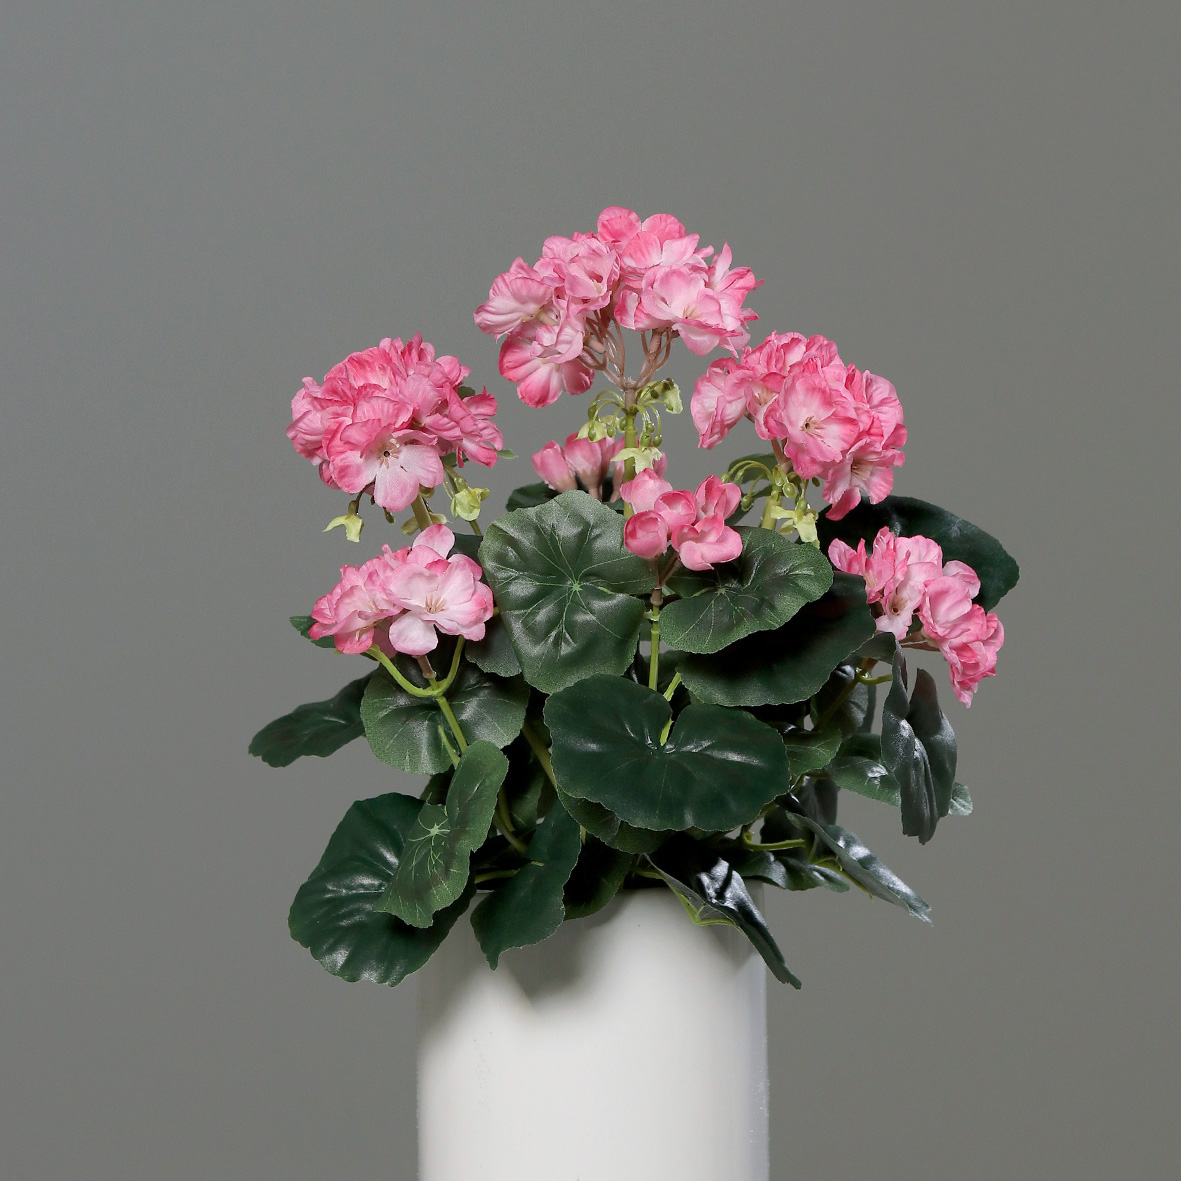 Geranie 36x28cm rosa -ohne Topf- DP Kunstpflanzen künstliche Blumen Pflanzen Kunstblumen